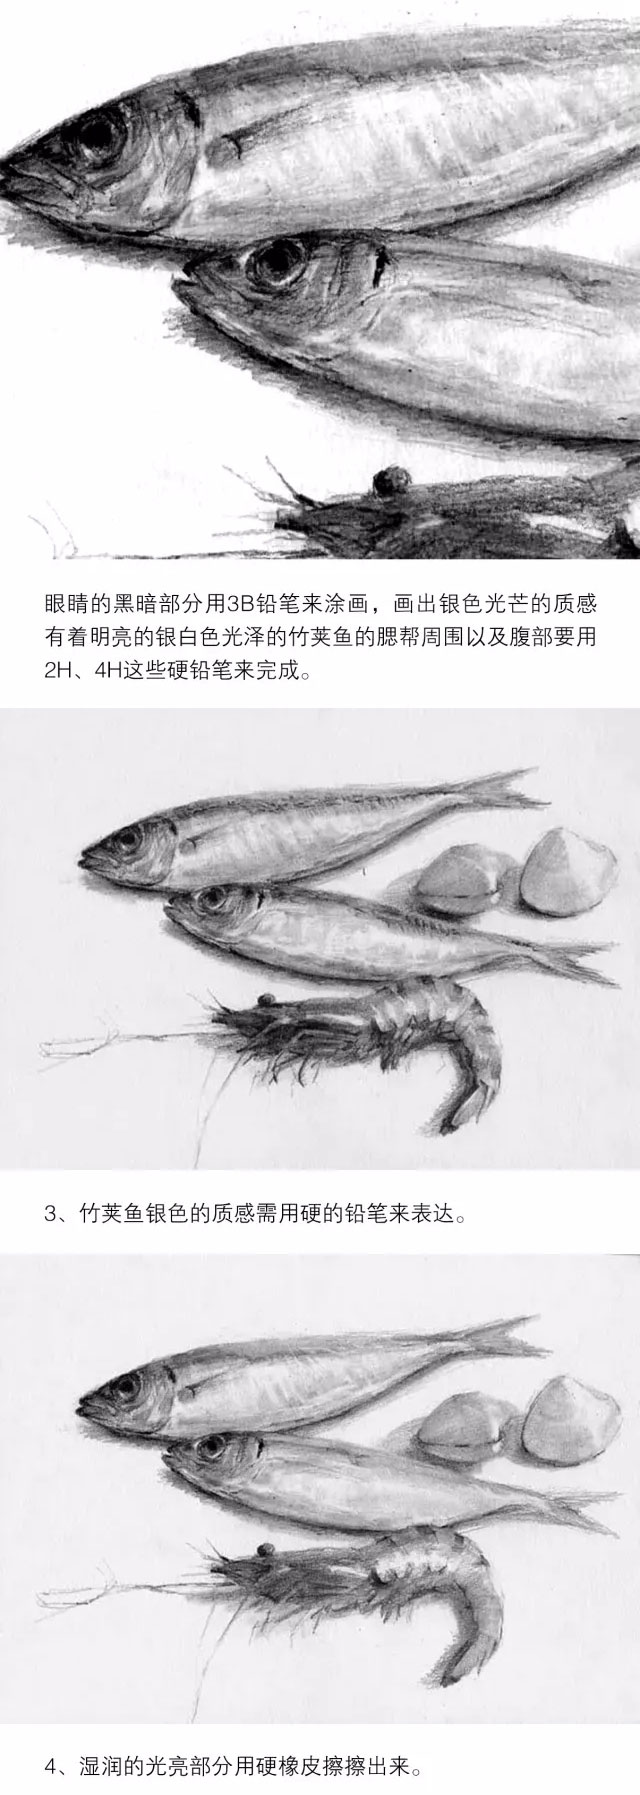 素描静物：鱼贝类物体的质感表现_02.jpg